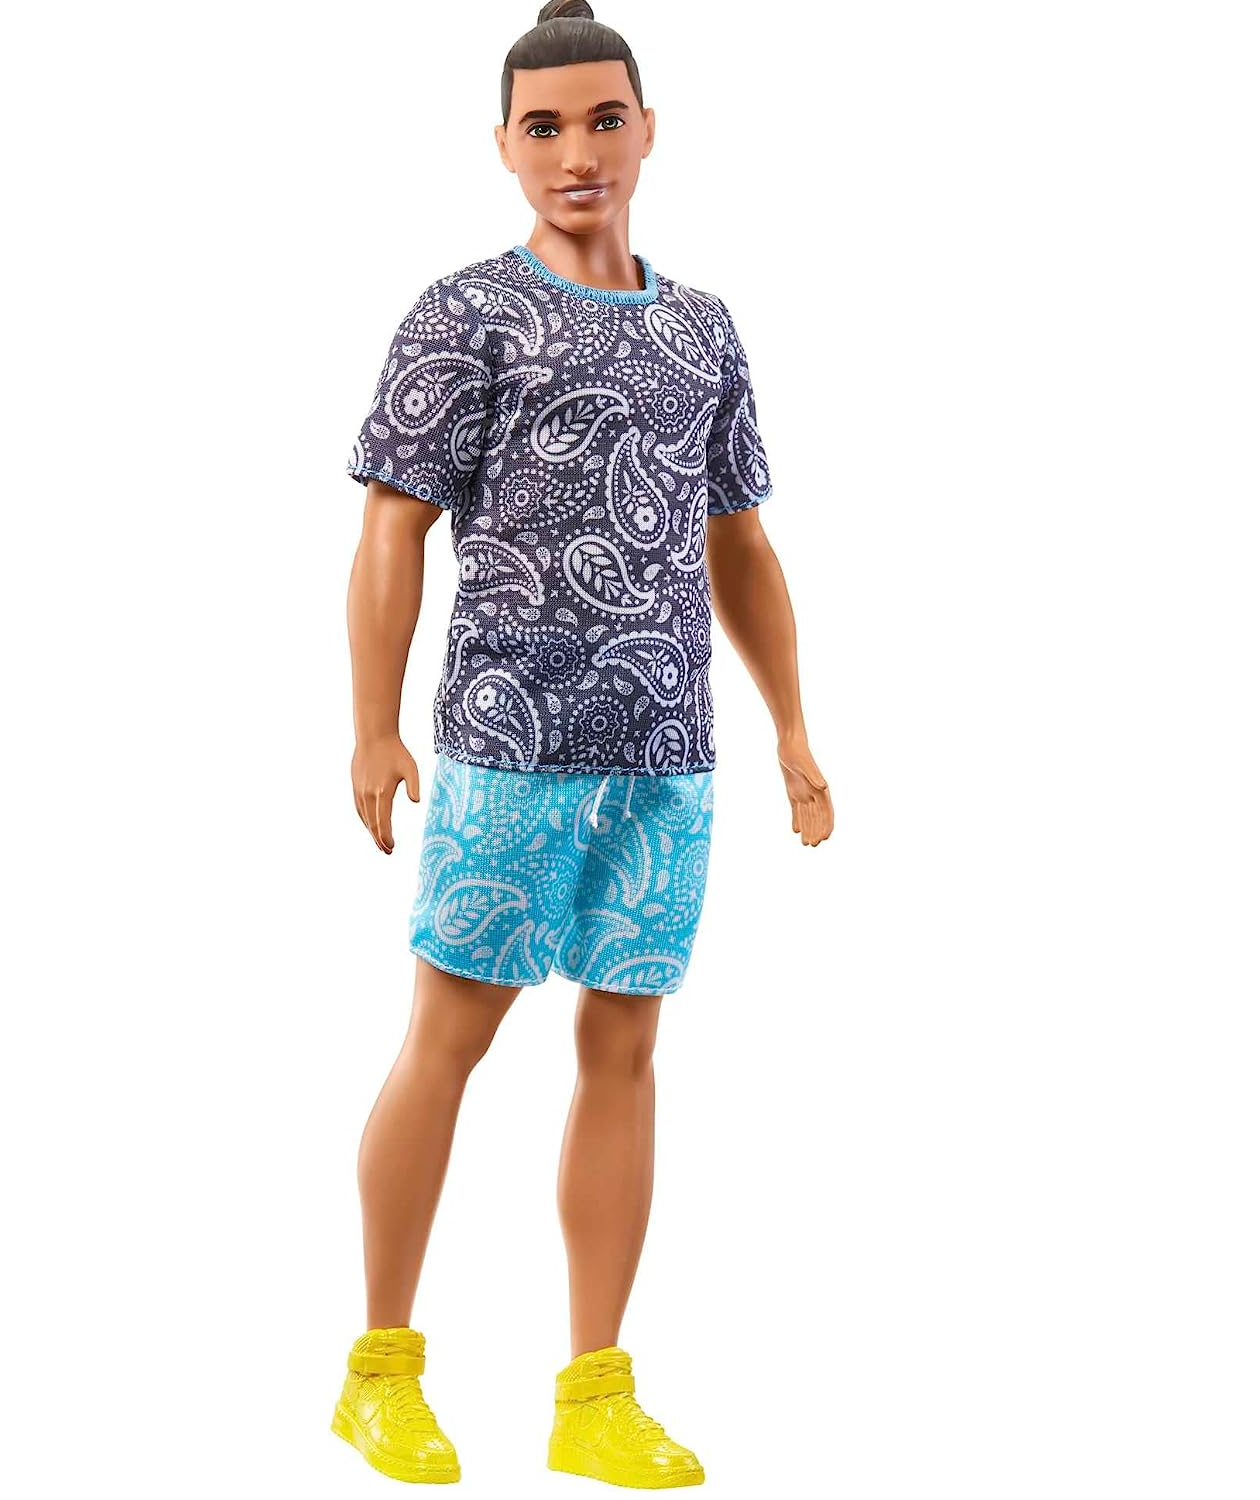 Boneco Ken Fashionista #204 Mattel - Fátima Criança